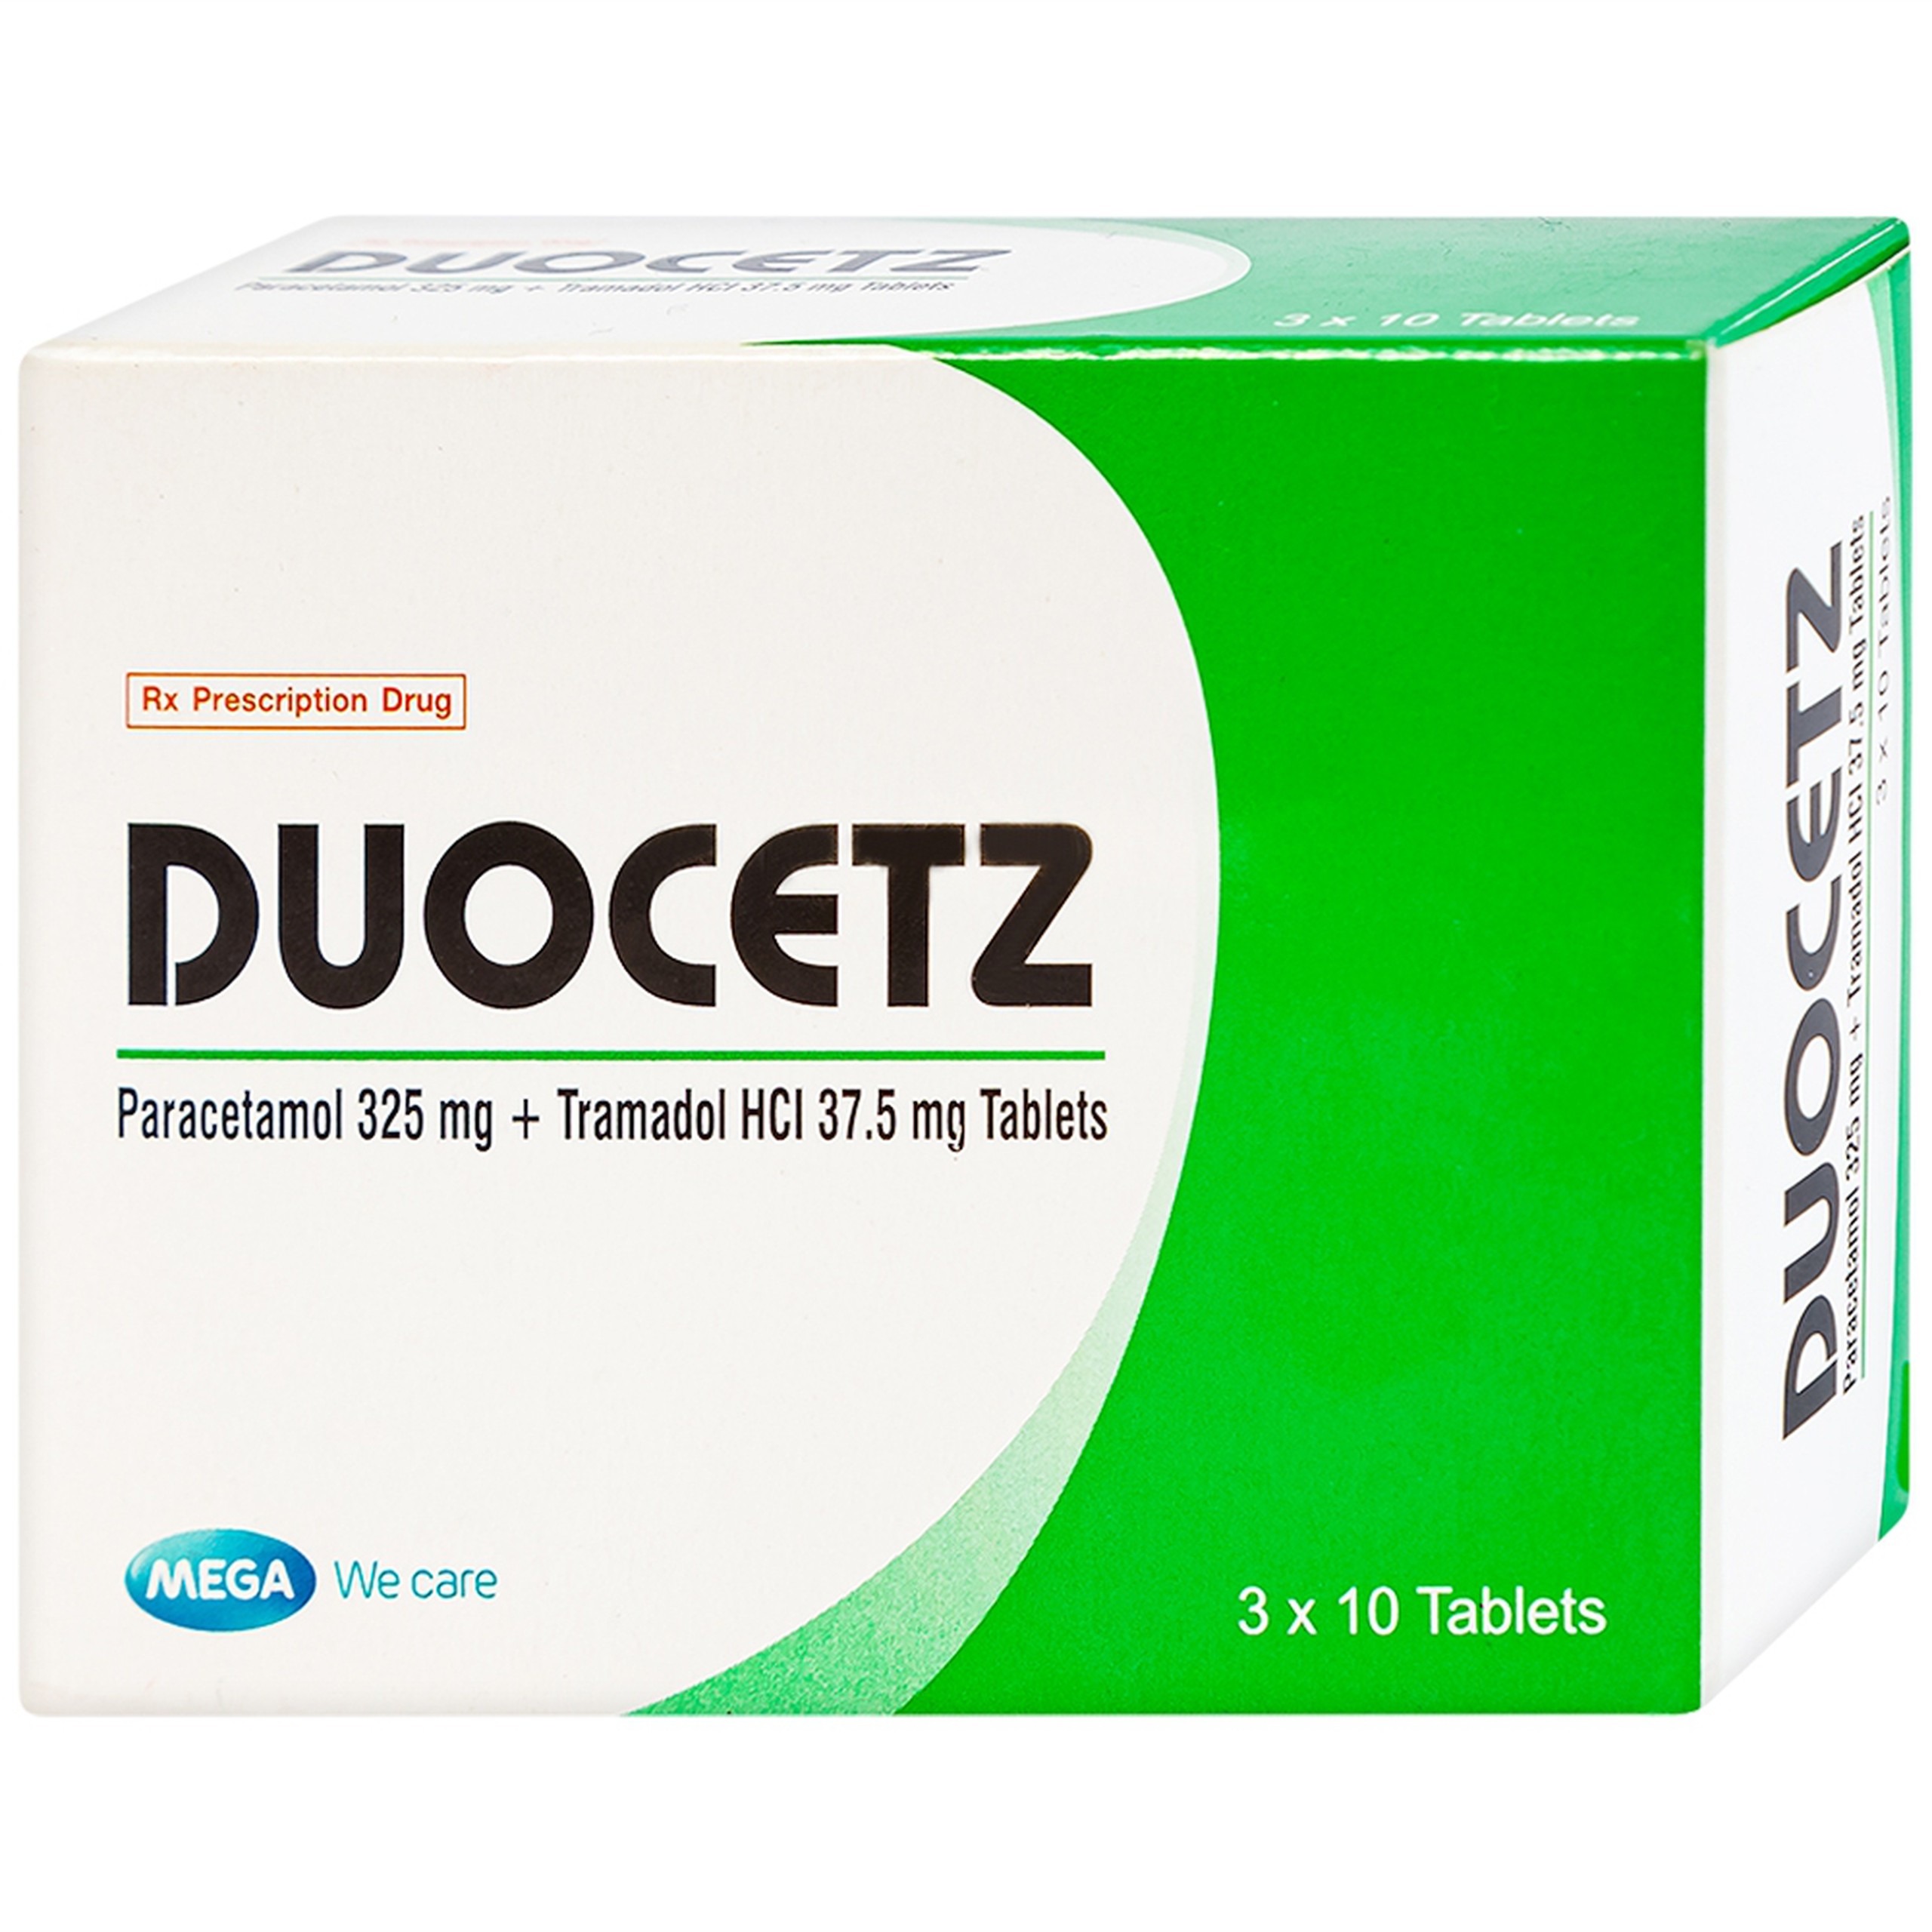 Thuốc Doucetz MEGA We care điều trị cơn đau vừa đến nặng (3 vỉ x 10 viên)